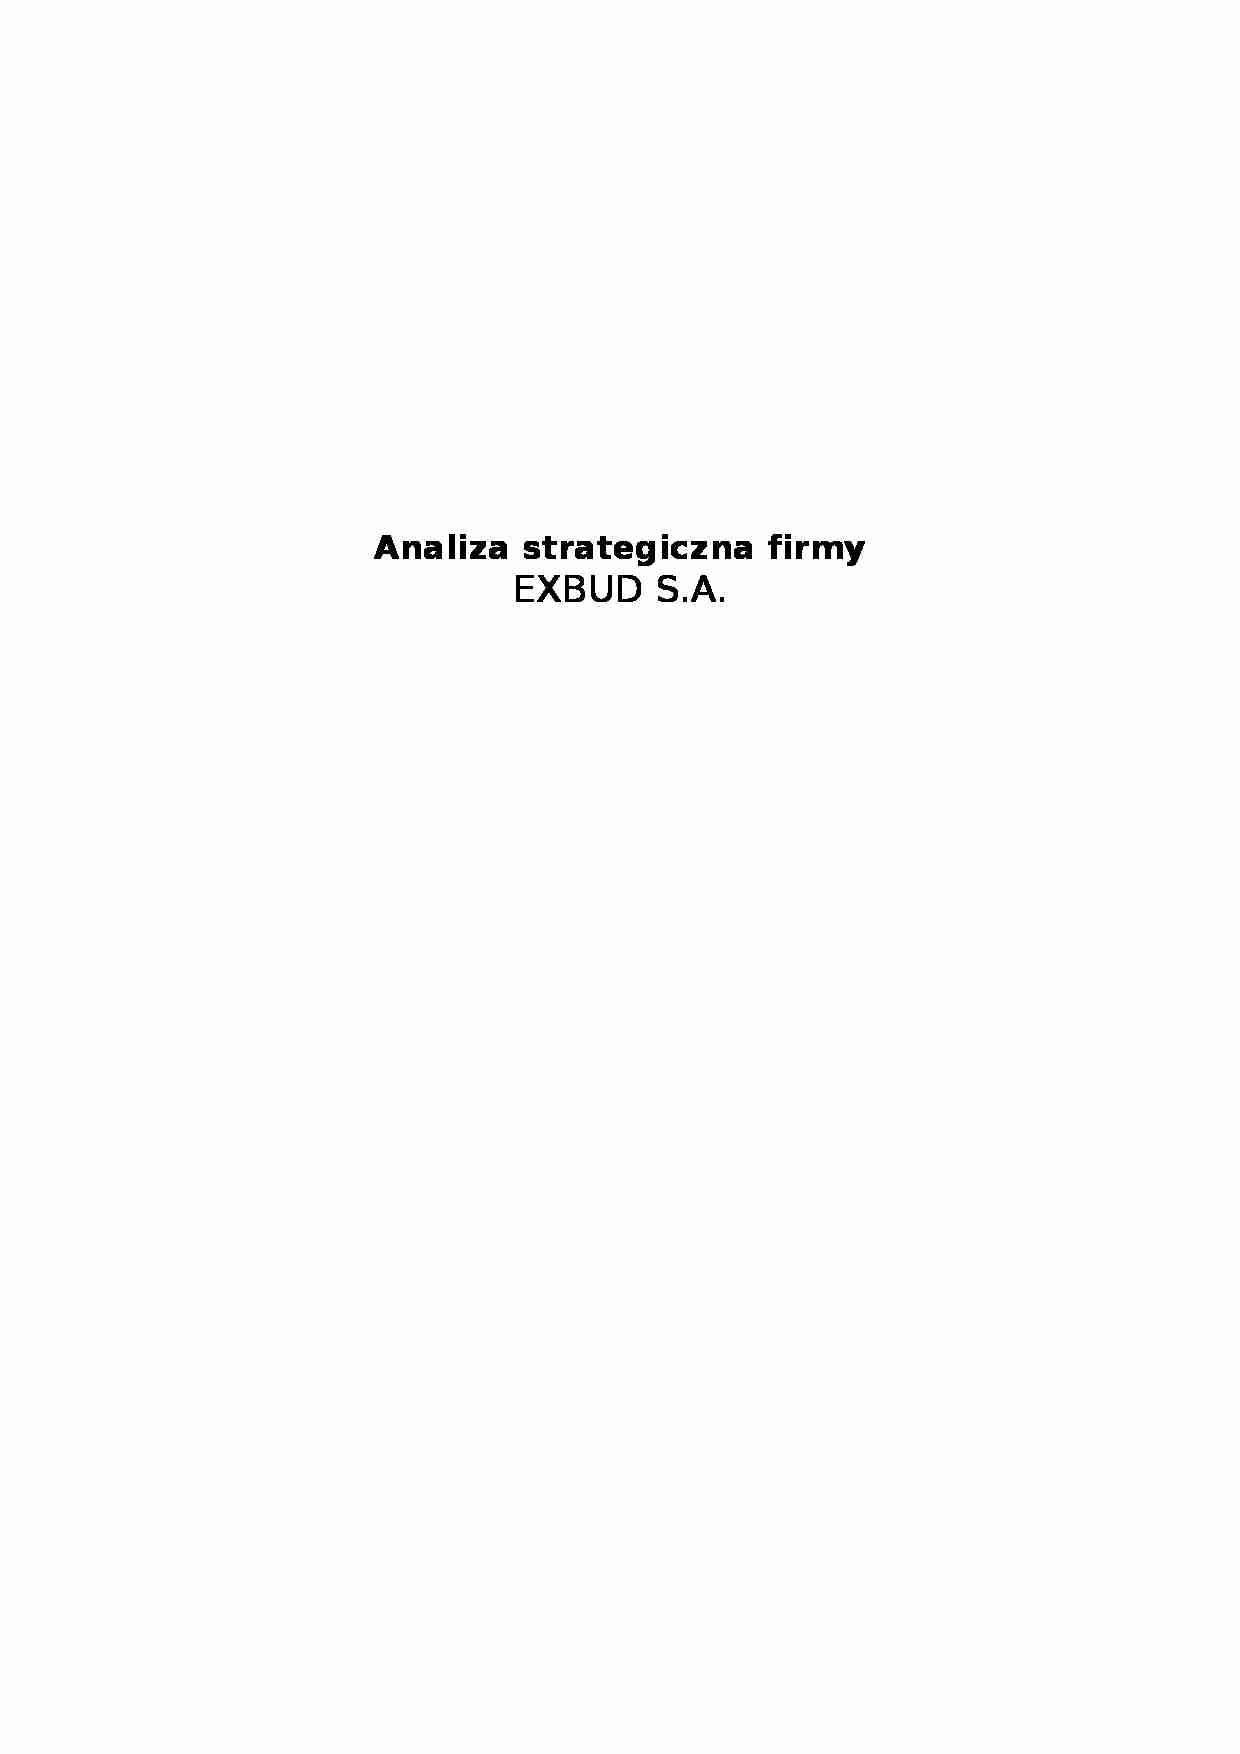 Analiza strategiczna  - Exbud S.A. - strona 1